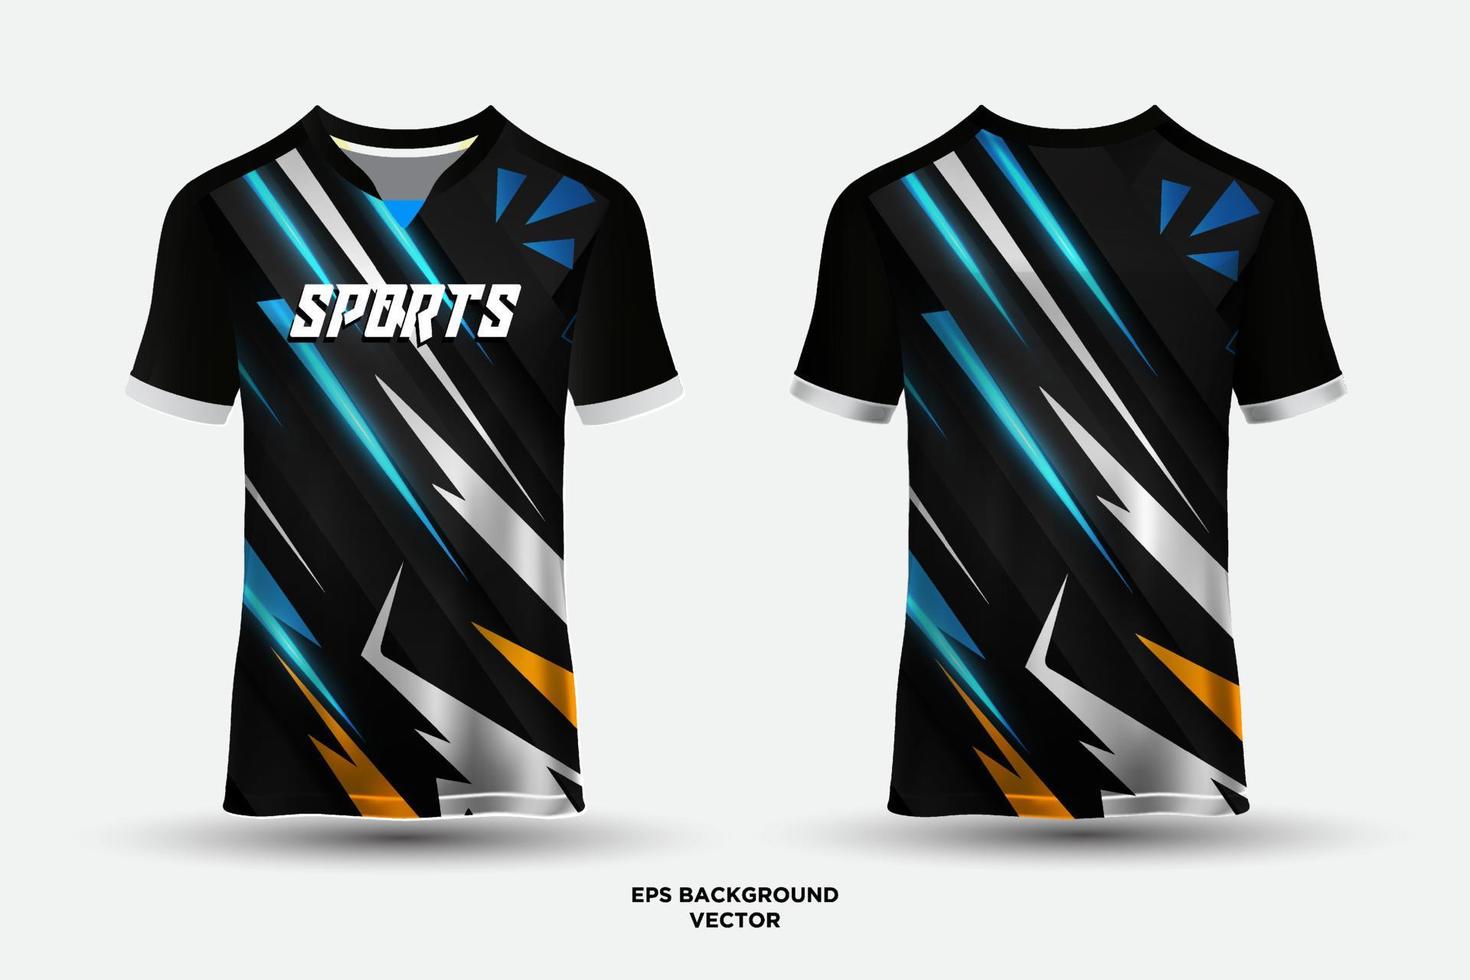 vetor de design de camisa esportiva futurista com elementos geométricos